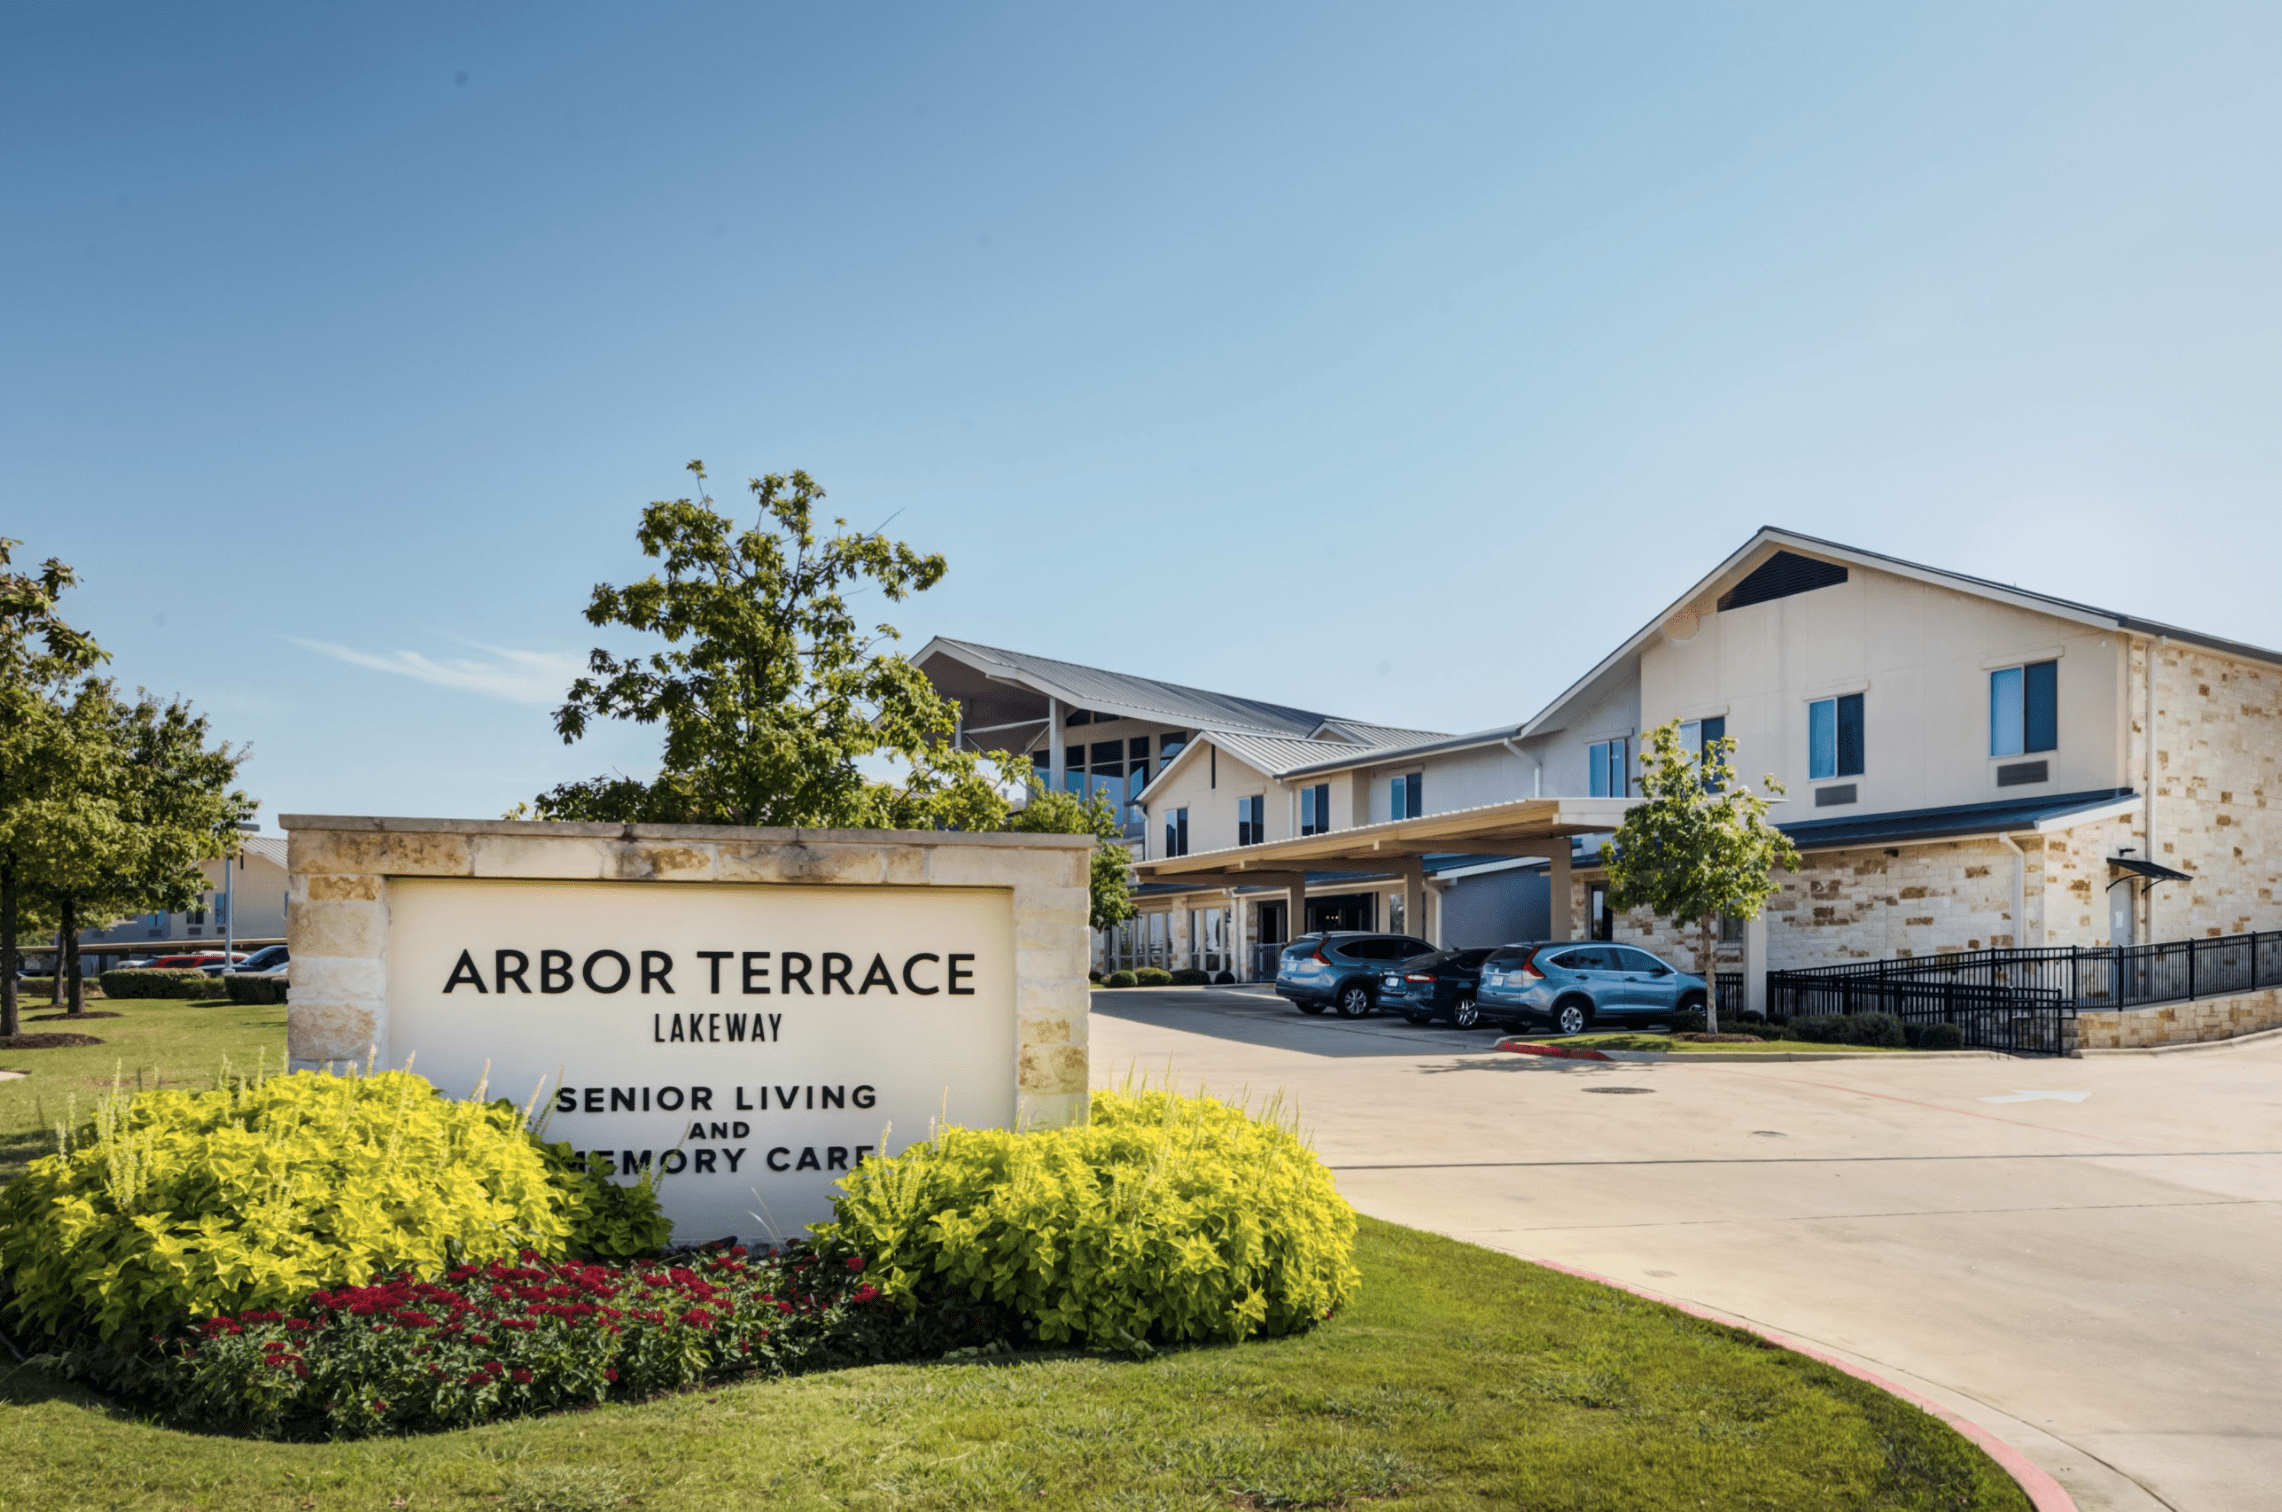 Arbor Terrace Lakeway Community Entrance